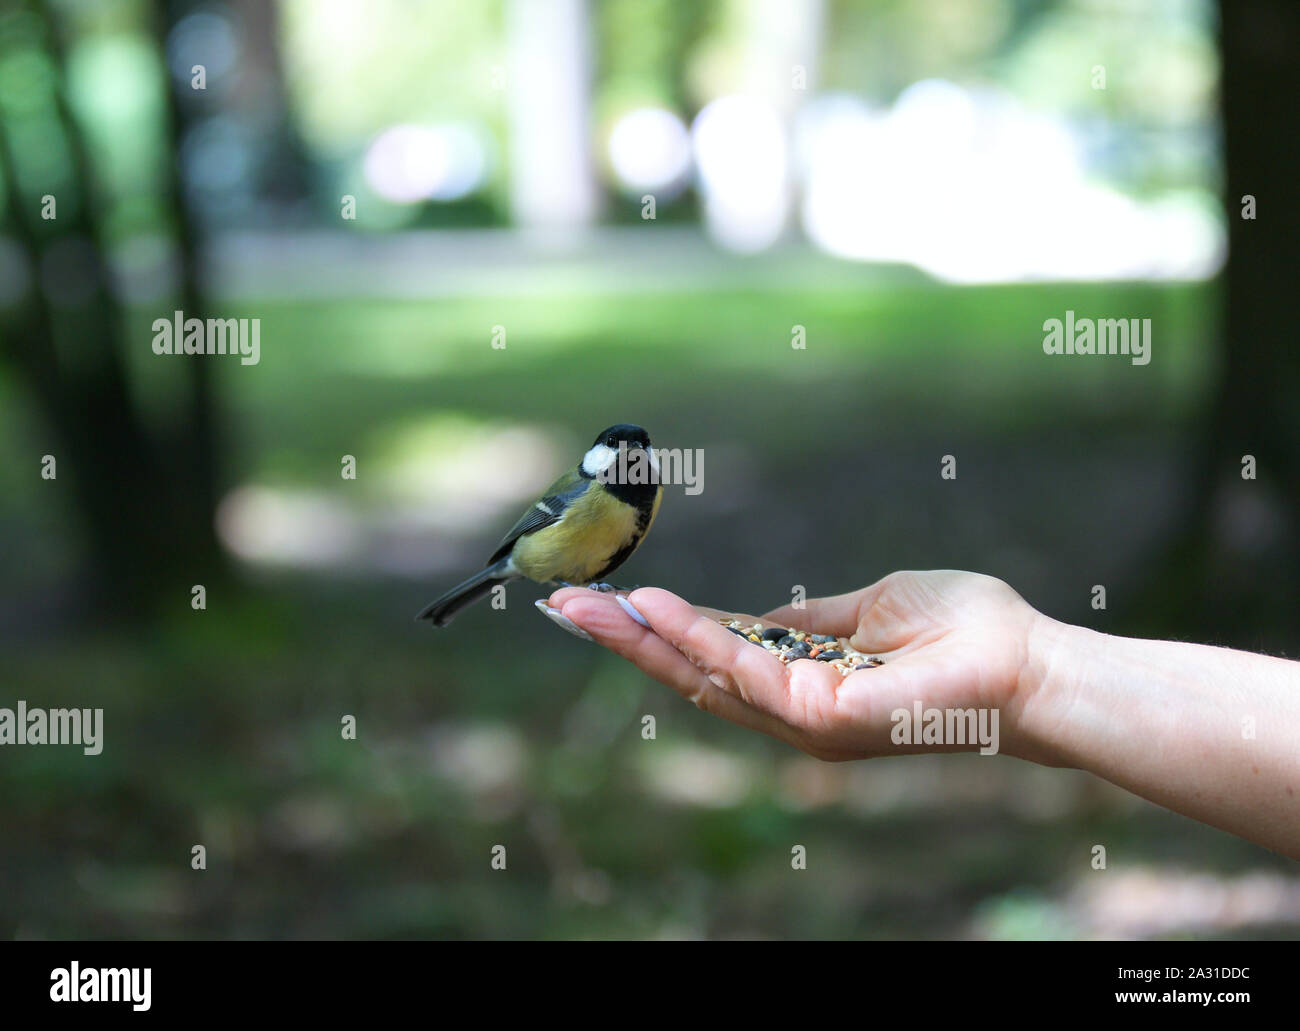 Pajarito comiendo de la mano, el pájaro en mano Fotografía de stock - Alamy